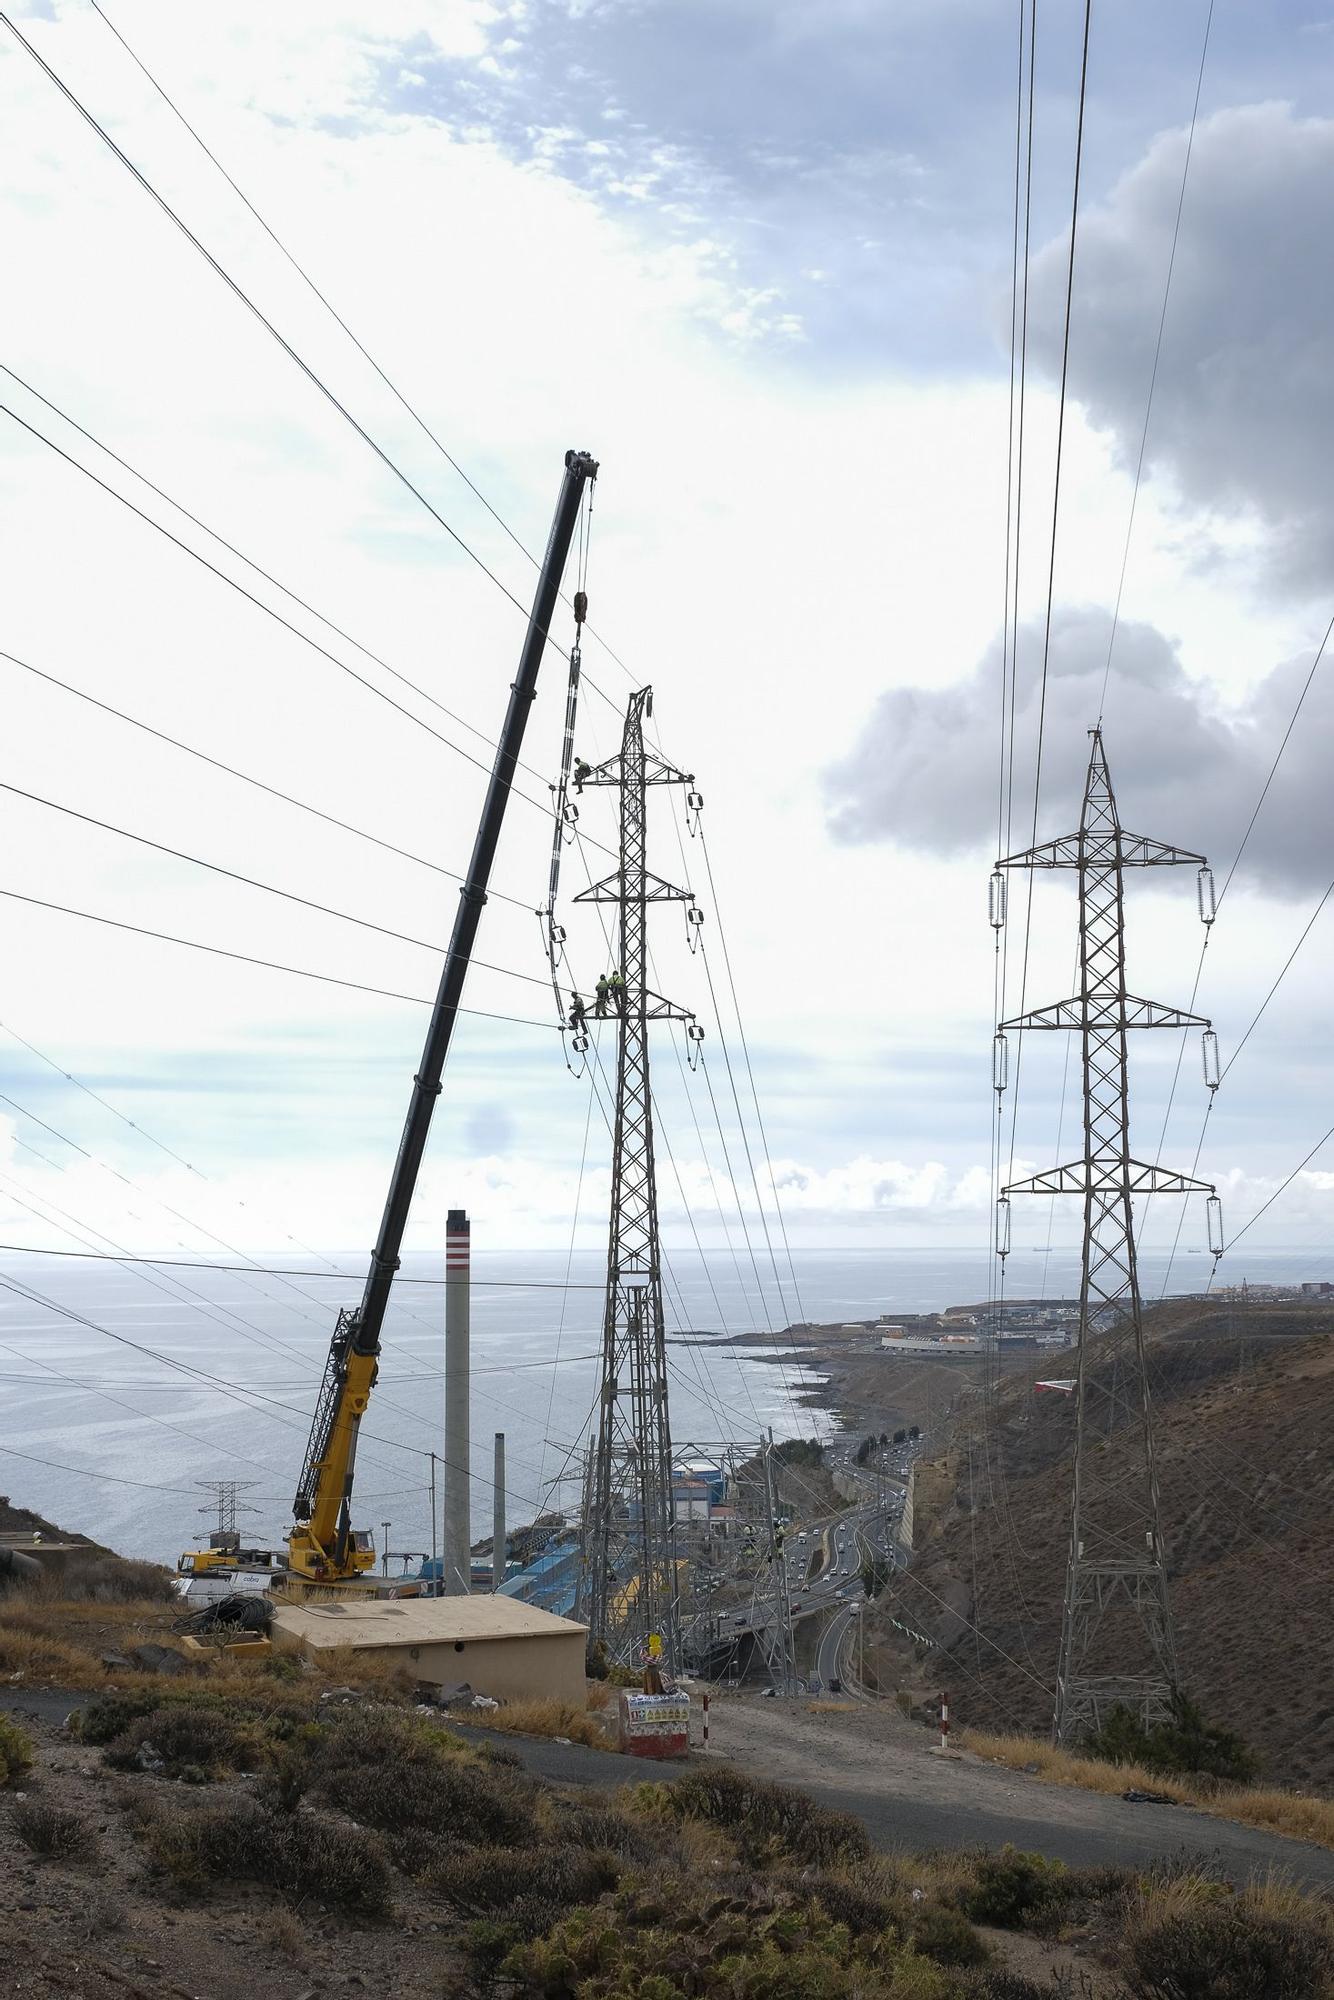 Operarios desmontando torretas de alta tensión junto a la central electrica en Jinámar